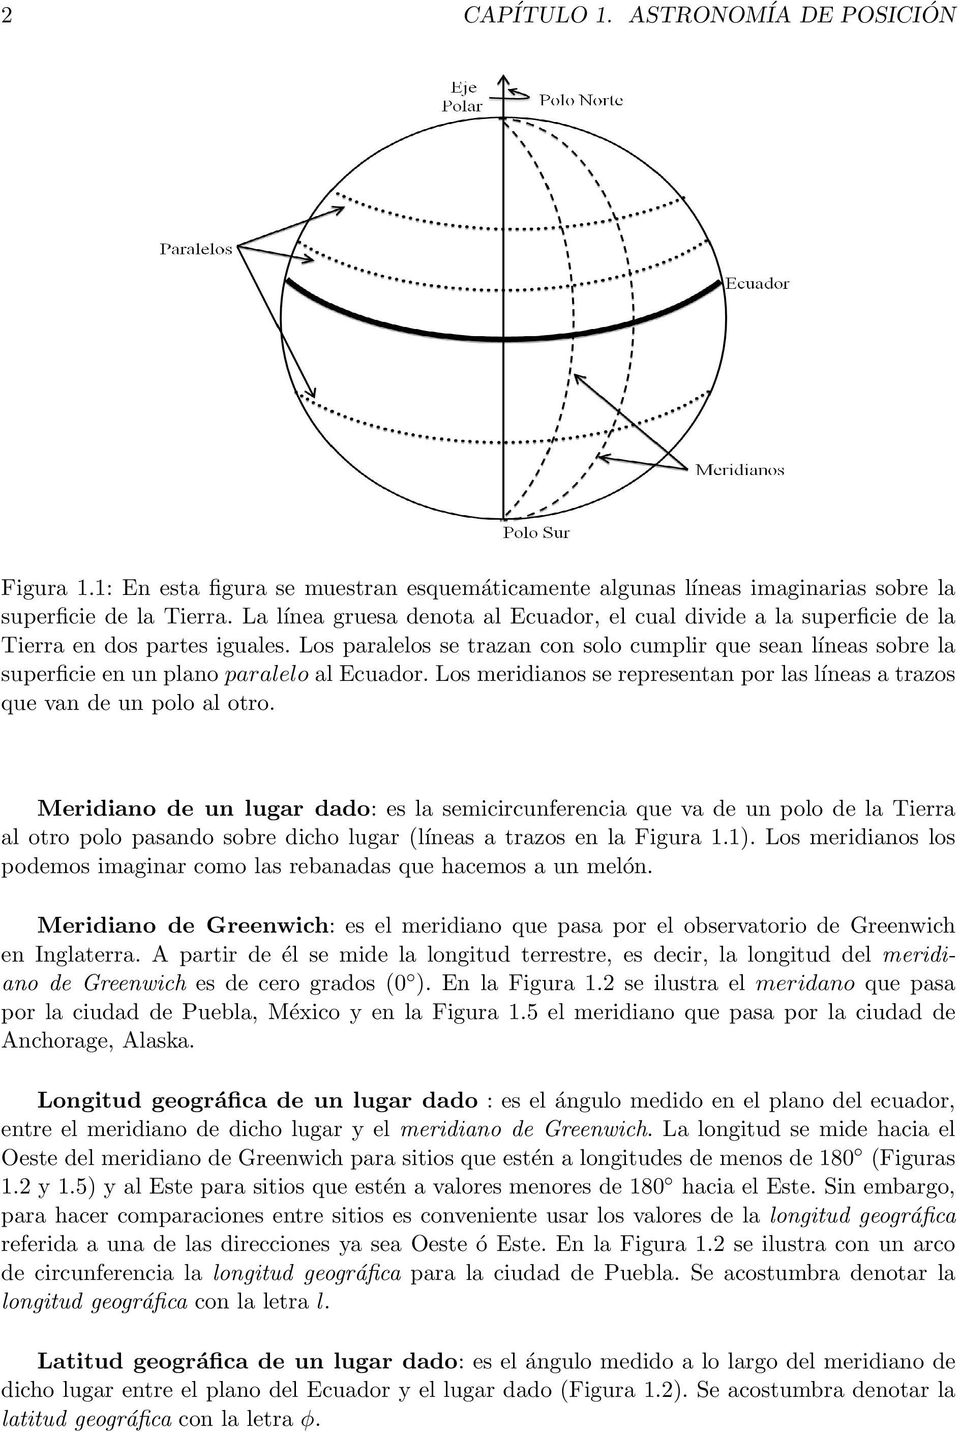 Los paralelos se trazan con solo cumplir que sean líneas sobre la superficie en un plano paralelo al Ecuador. Los meridianos se representan por las líneas a trazos que van de un polo al otro.